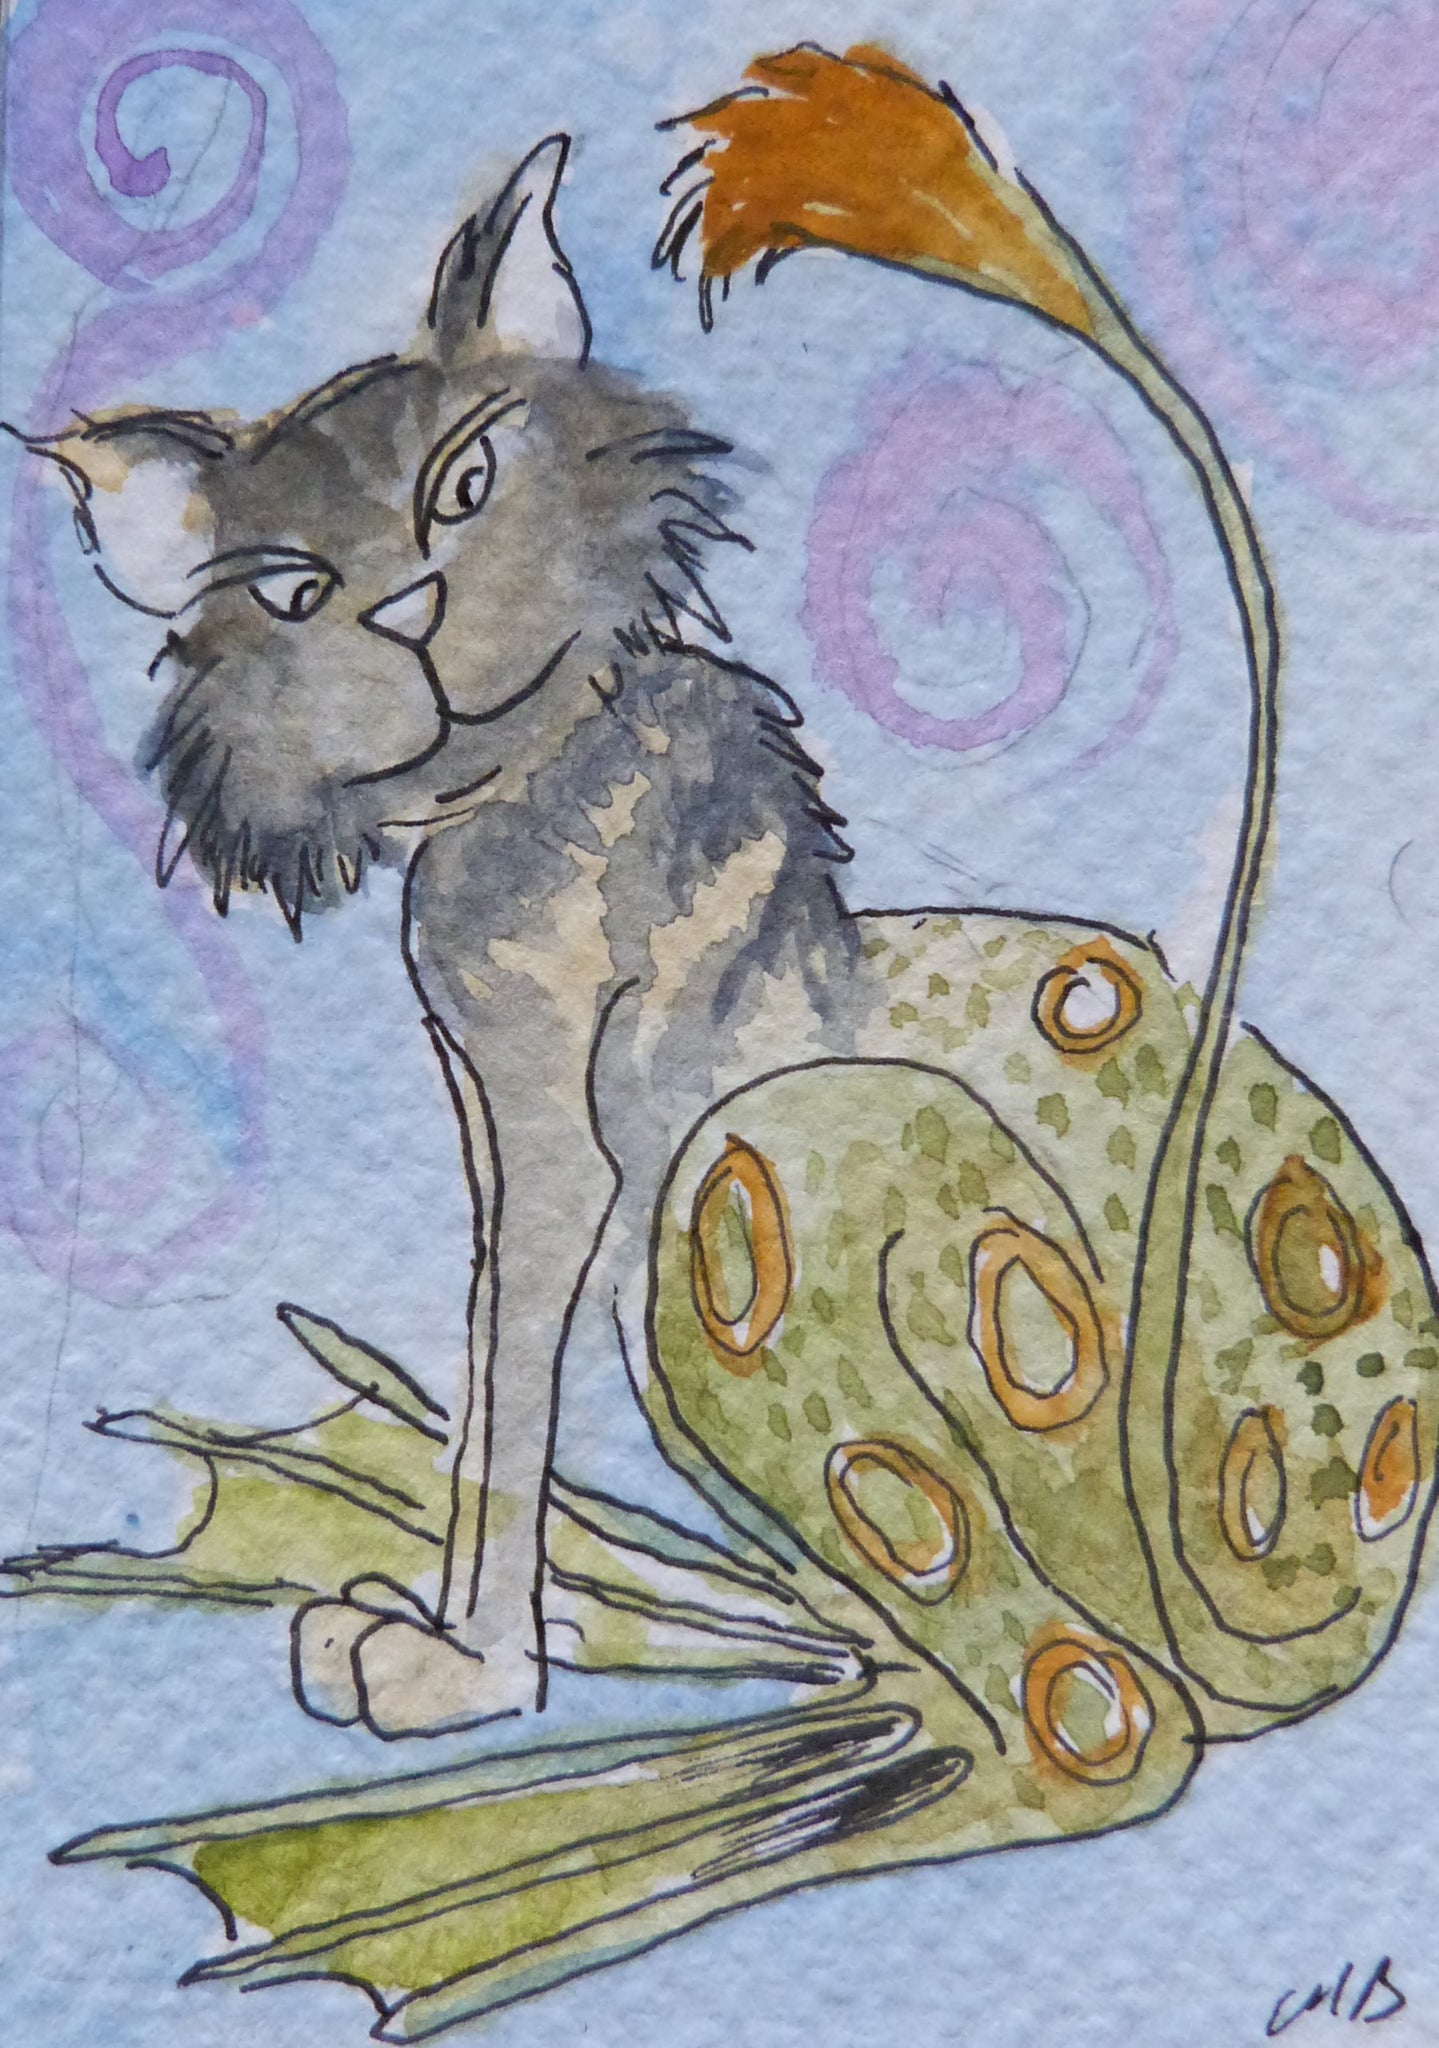 Minature - Margaret Brice " The Witches Cat"